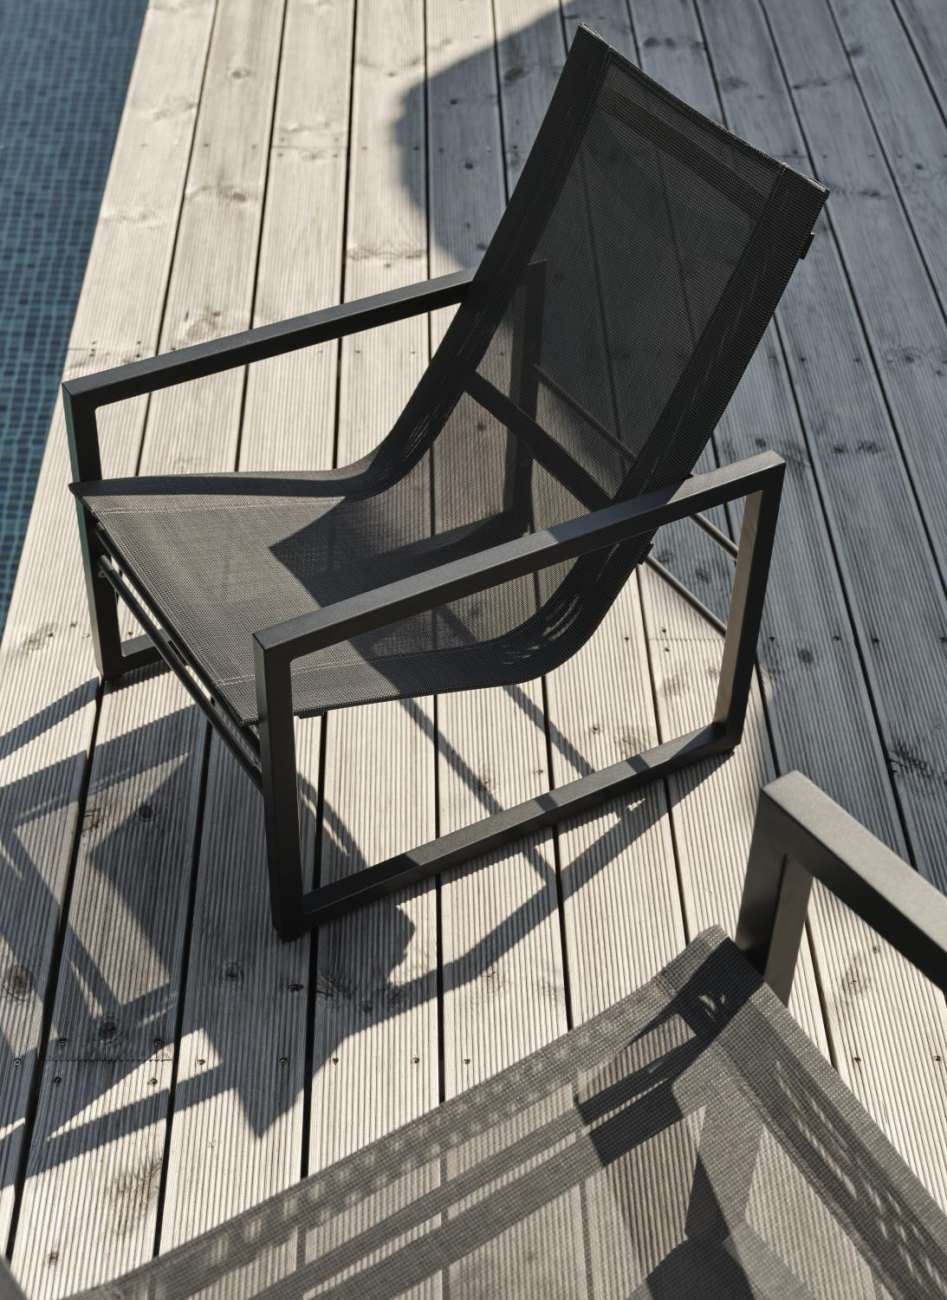 Der Gartensessel Vevi überzeugt mit seinem modernen Design. Gefertigt wurde er aus Textilene, welches einen schwarzen Farbton besitzt. Das Gestell ist aus Metall und hat eine schwarze Farbe. Die Sitzhöhe des Sessels beträgt 29 cm.